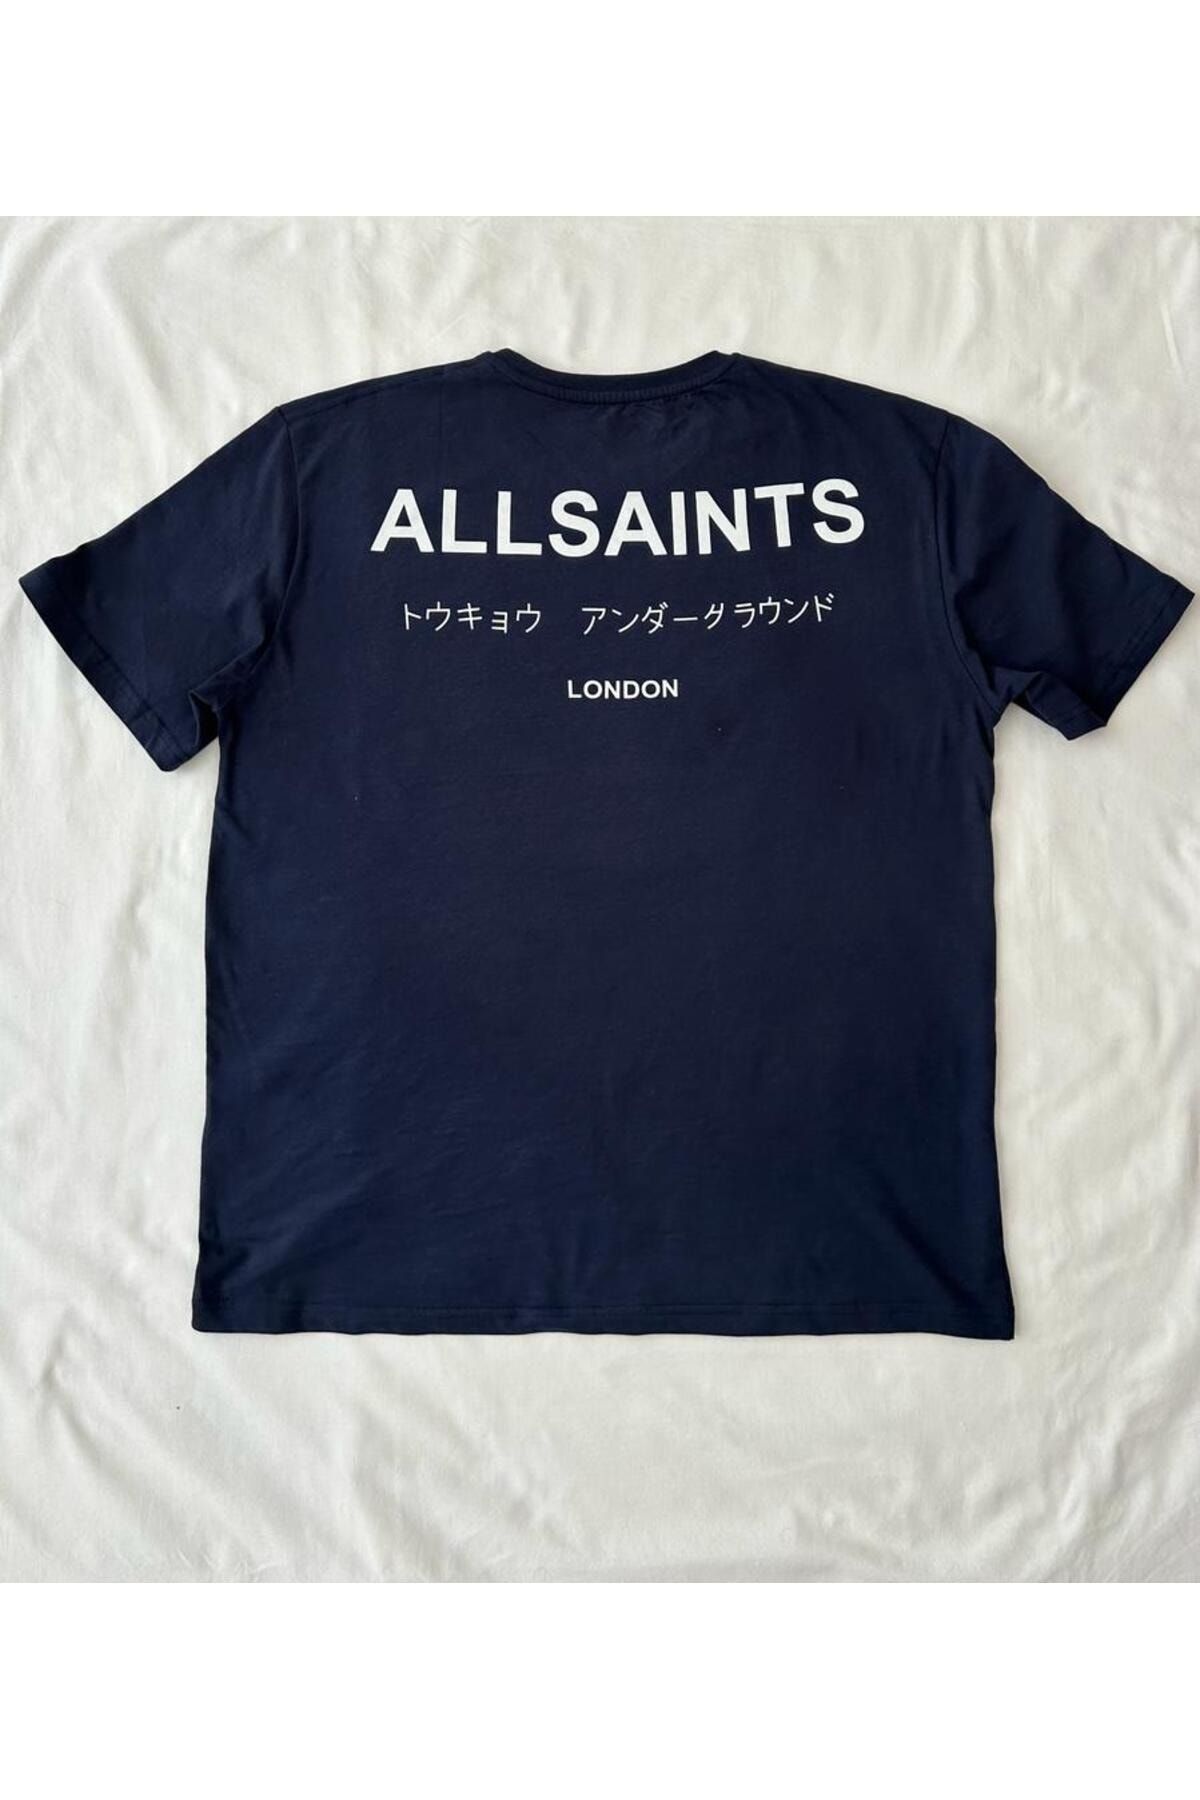 AllSaints Underground Laciver T-shirt